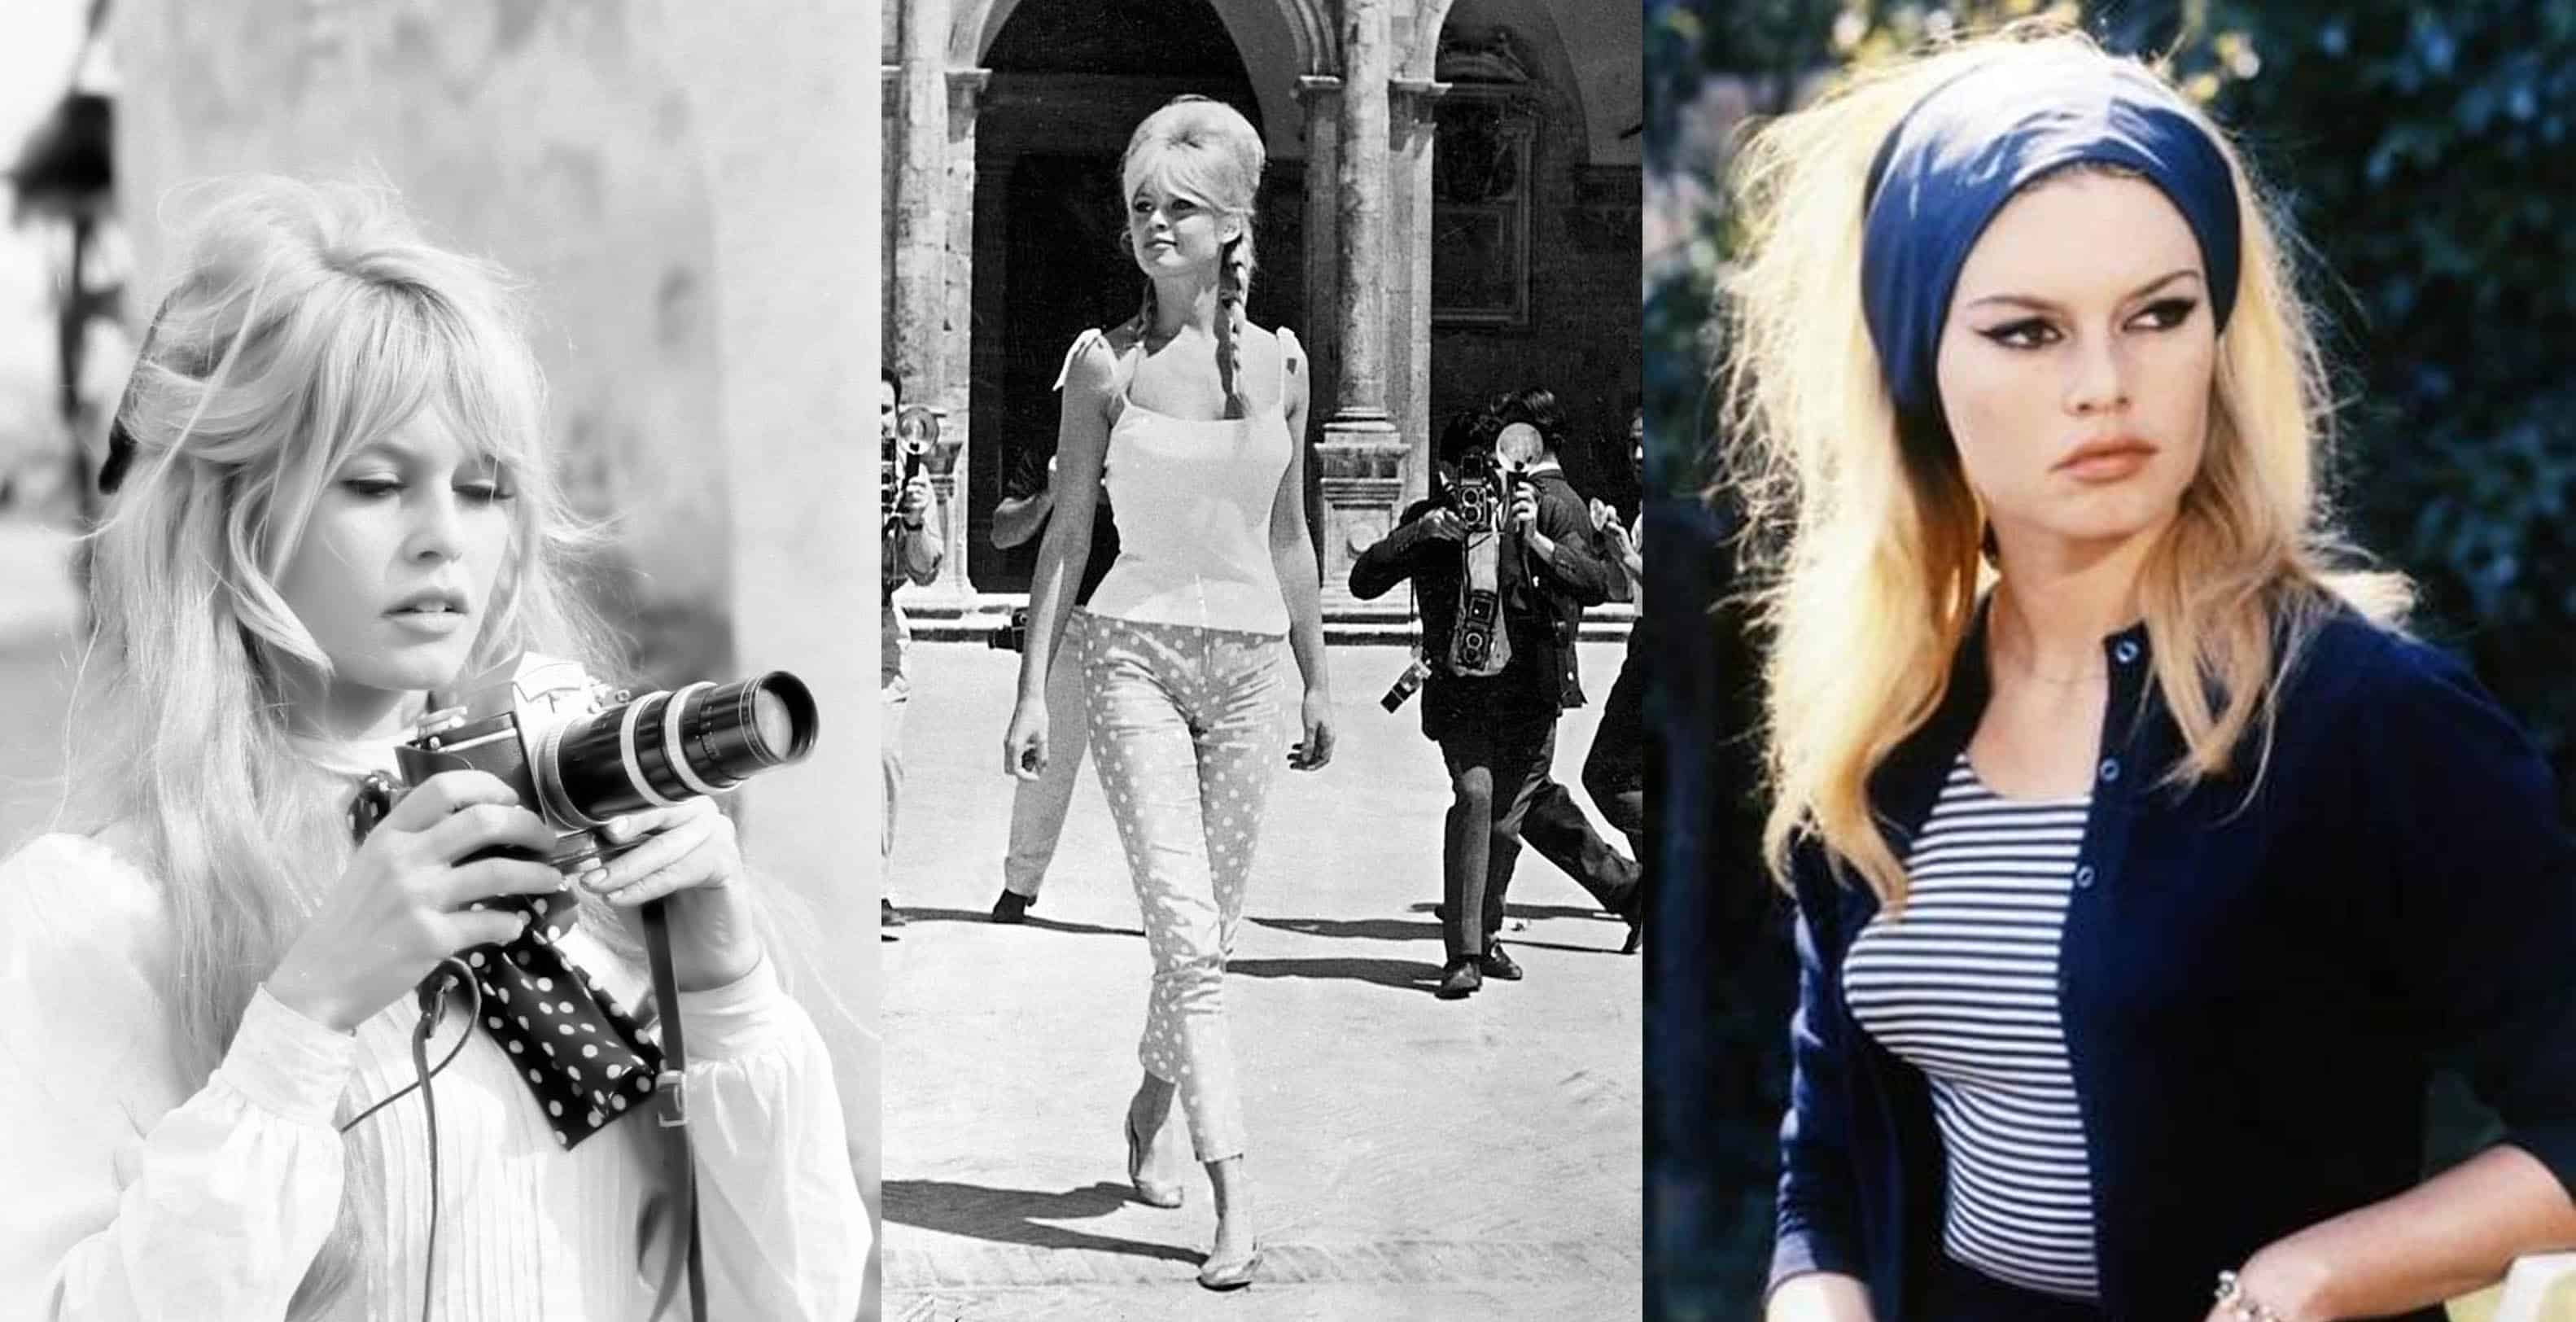 brigitte-bardot-60s-fashion.jpg